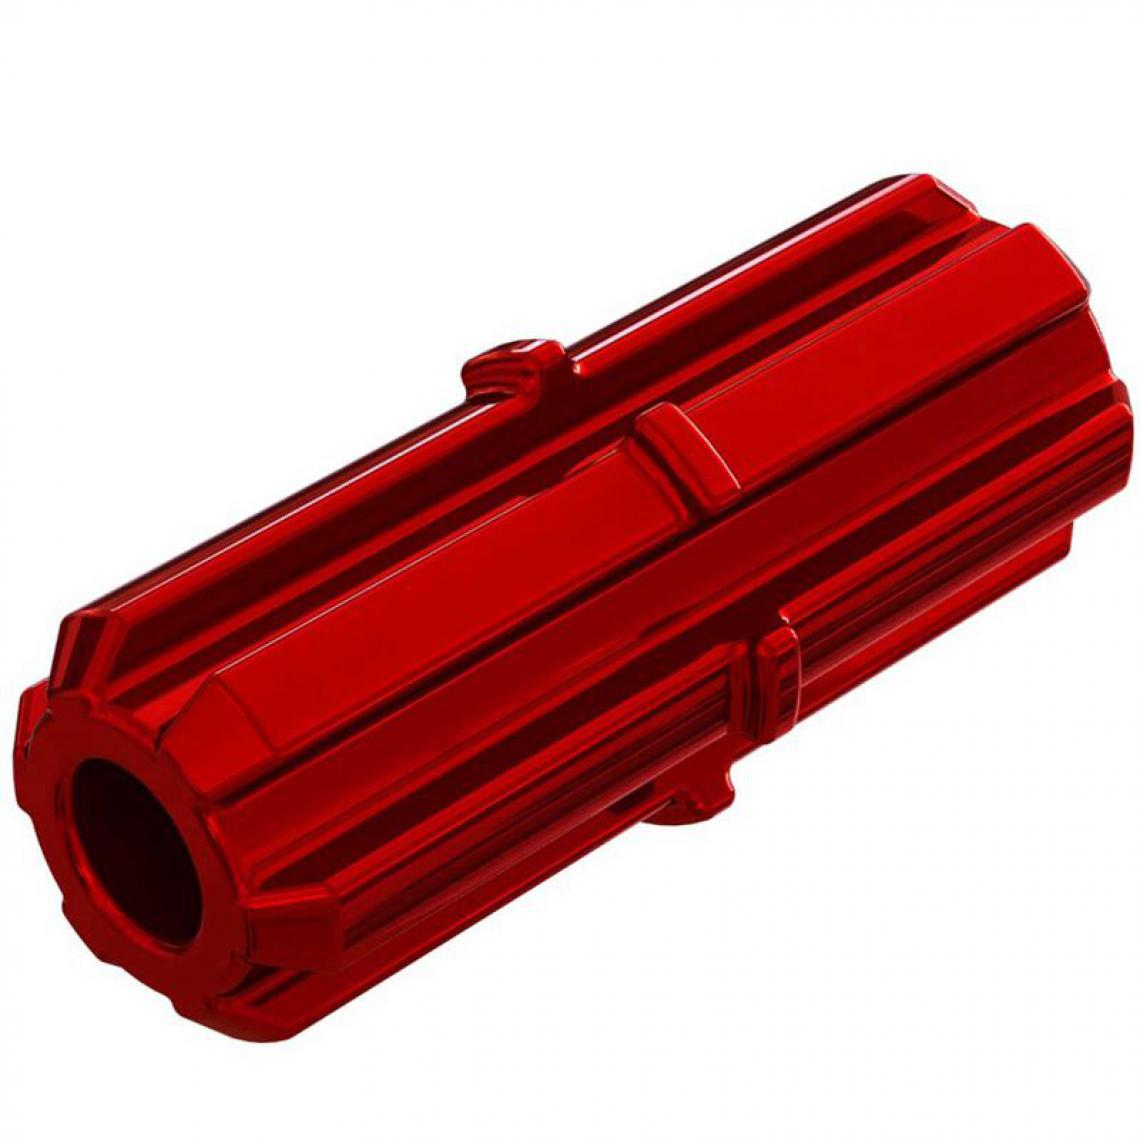 Arrma - AR310881 - Slipper Shaft Red 4x4 775 BLX 3S 4S - Accessoires et pièces